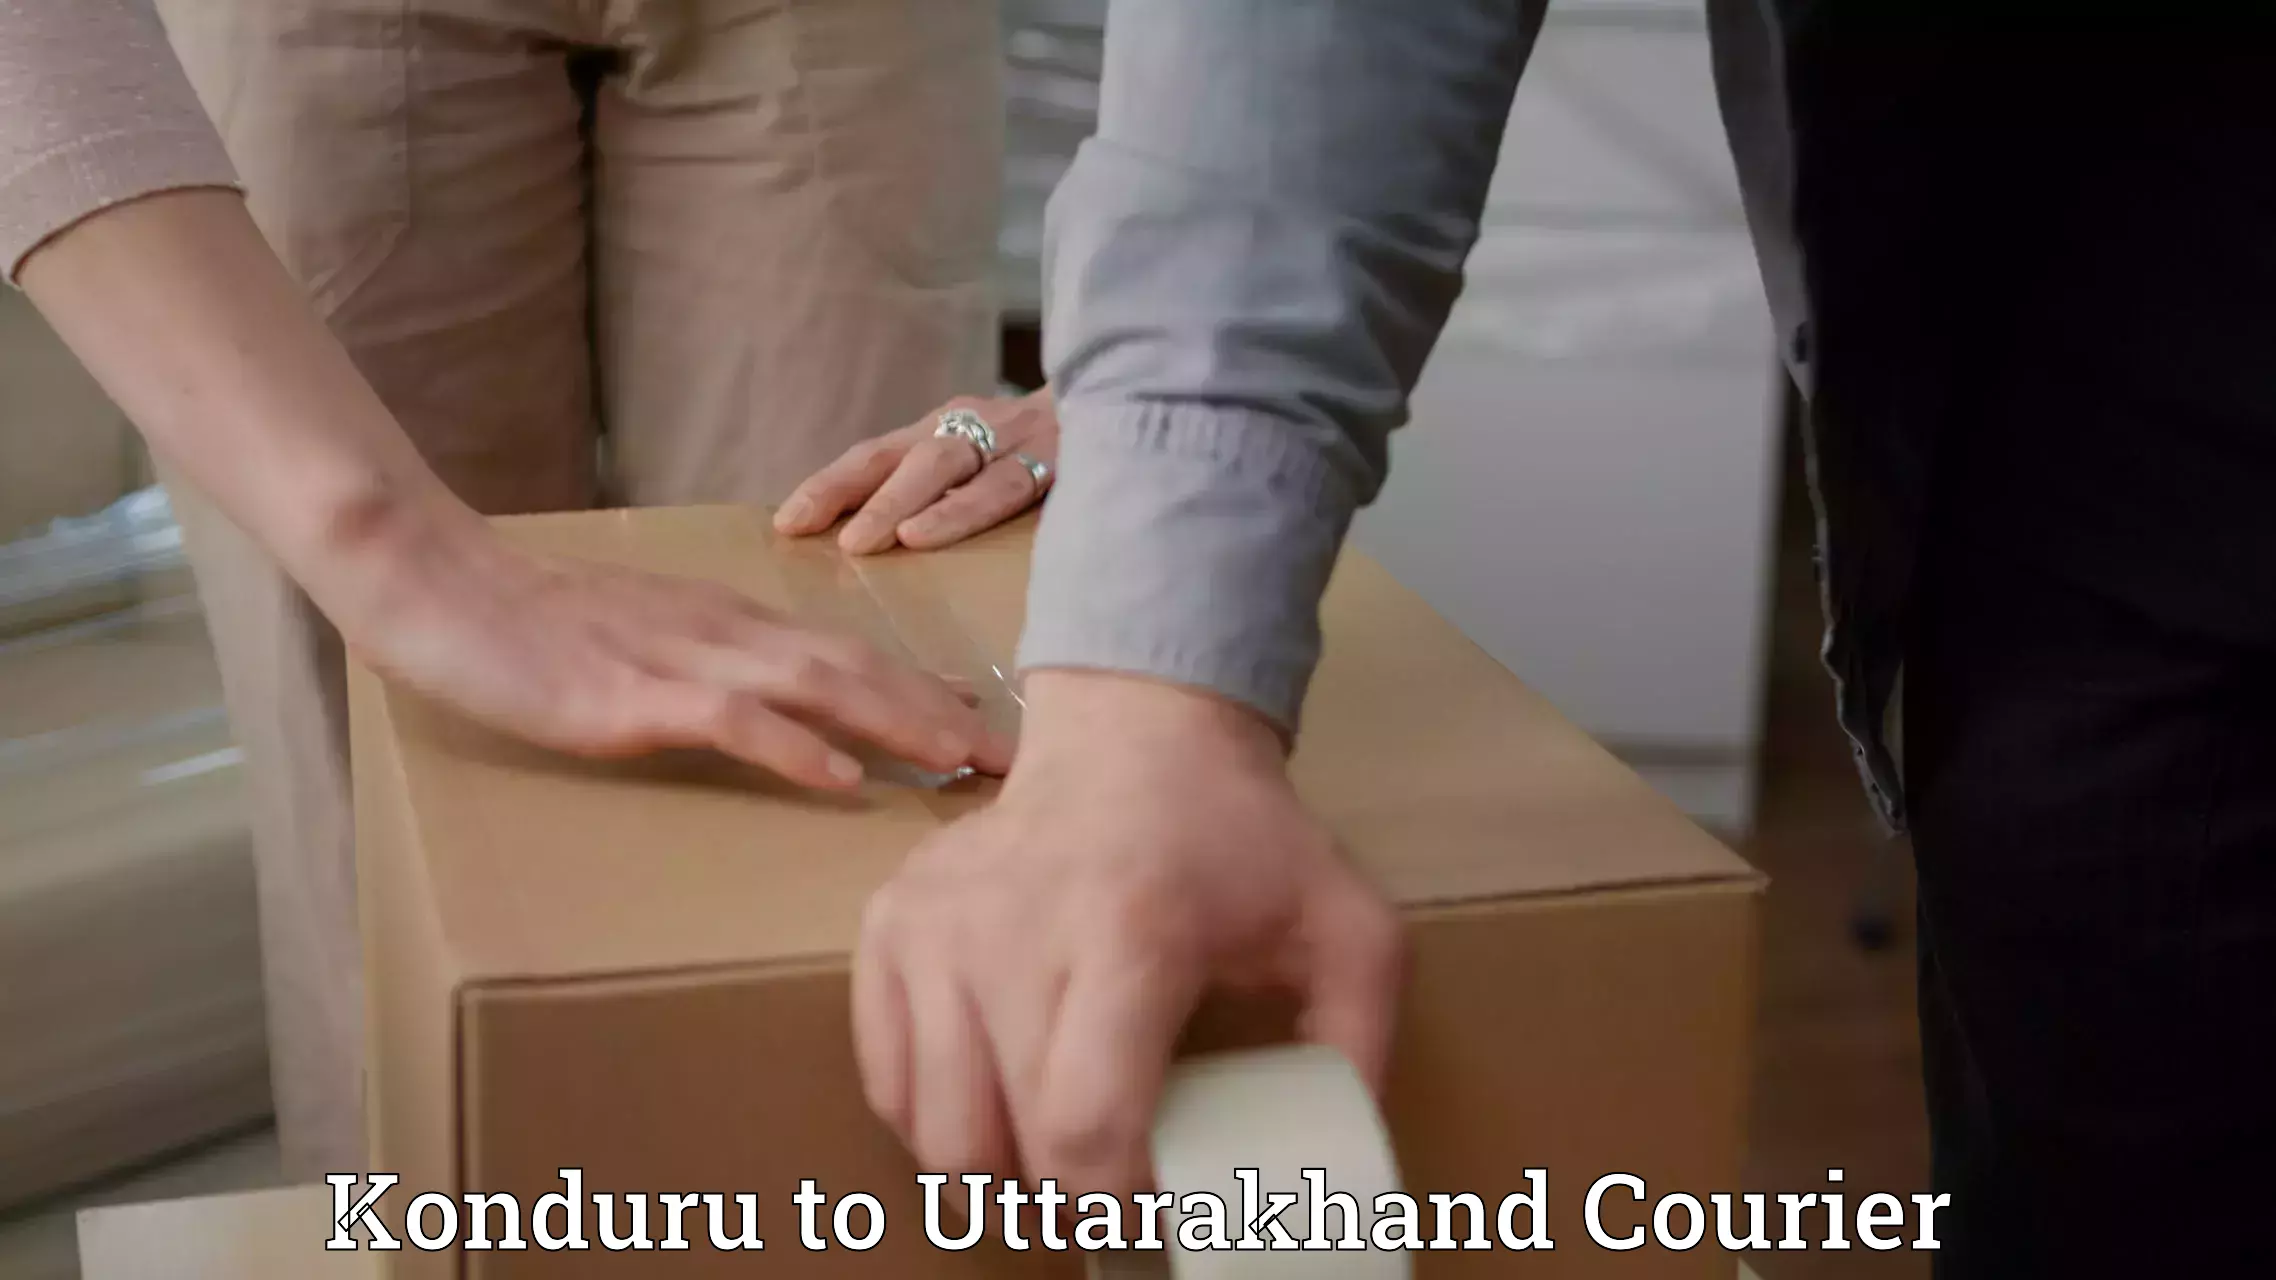 Shipping and handling Konduru to Uttarakhand